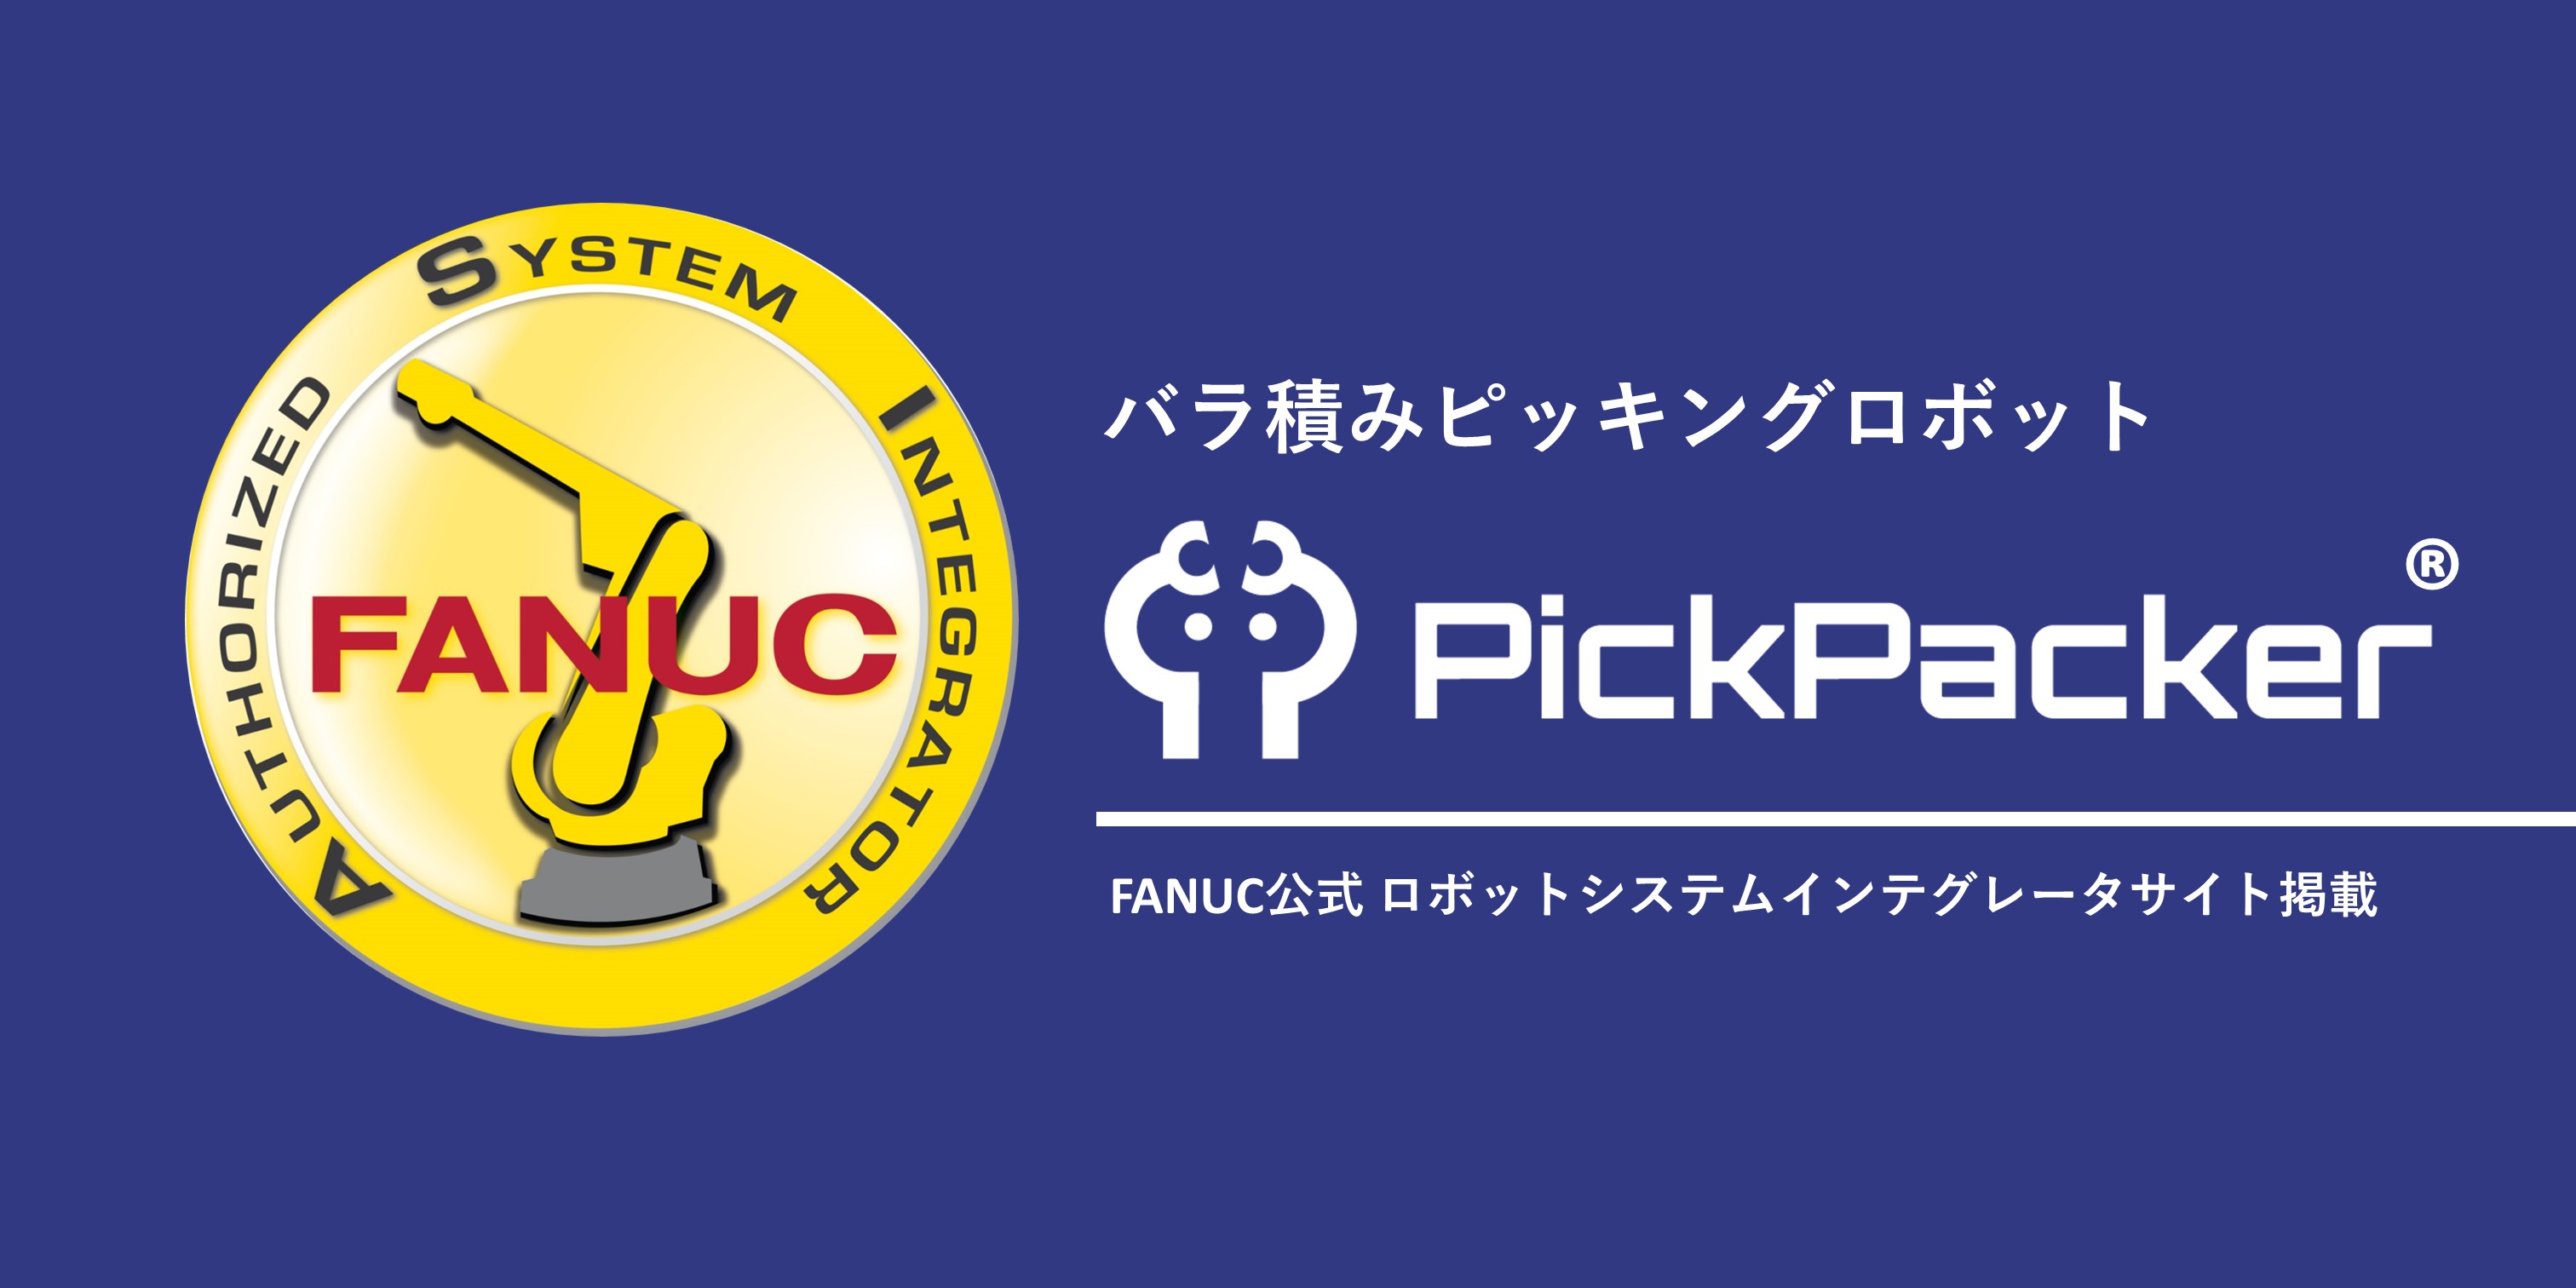 FANUC公式「ロボットシステムインテグレータサイト」にバラ積みピッキングロボット「PickPacker®」が掲載されました。